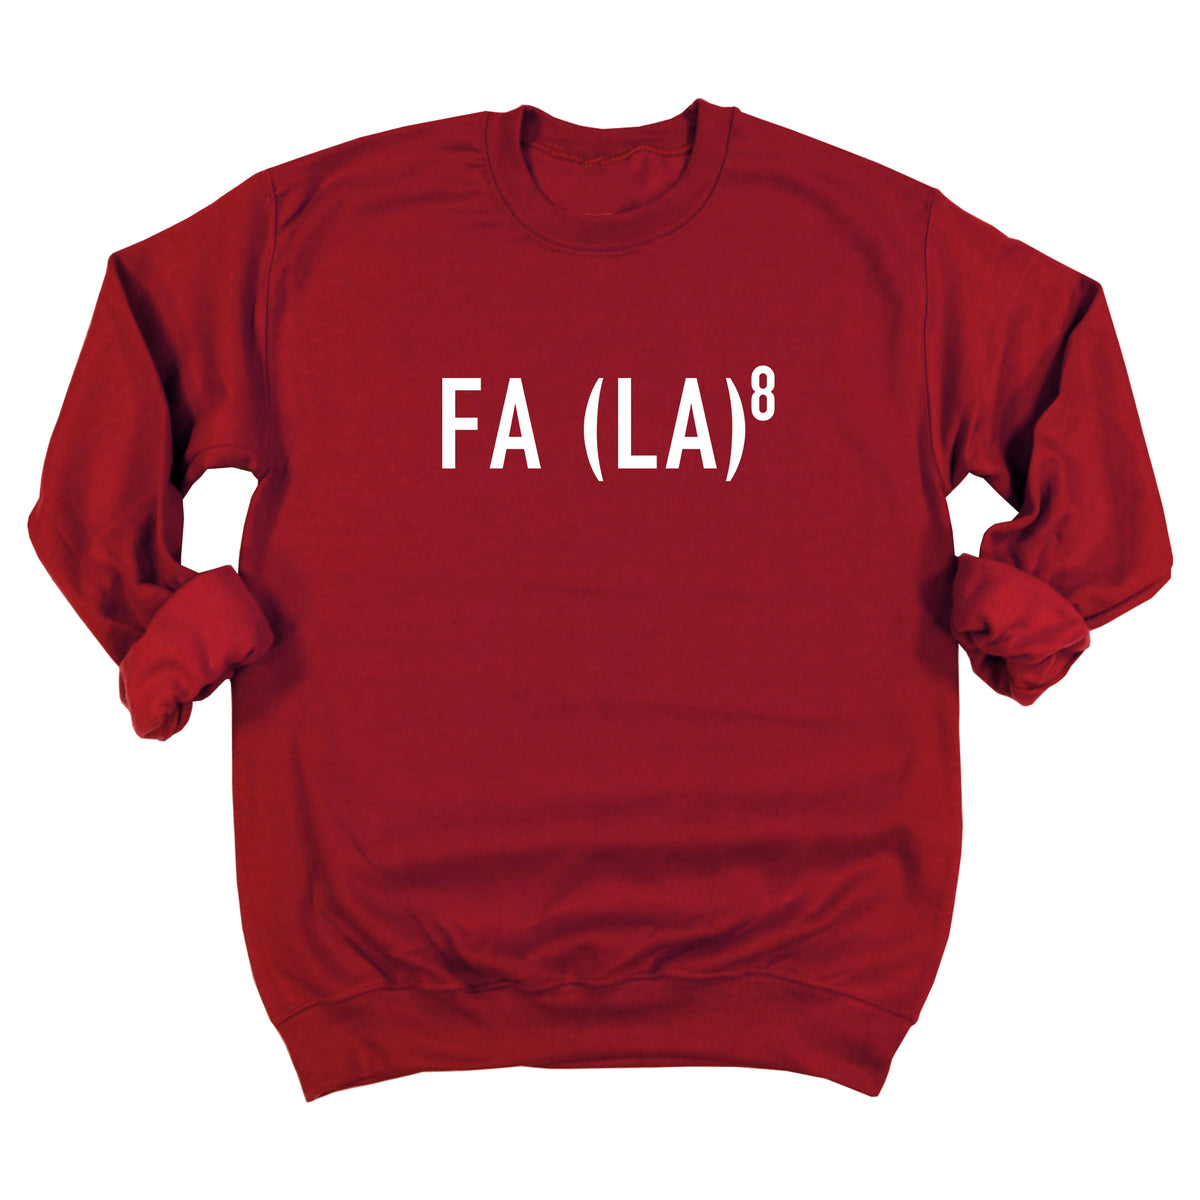 FA (LA)8 Sweatshirt